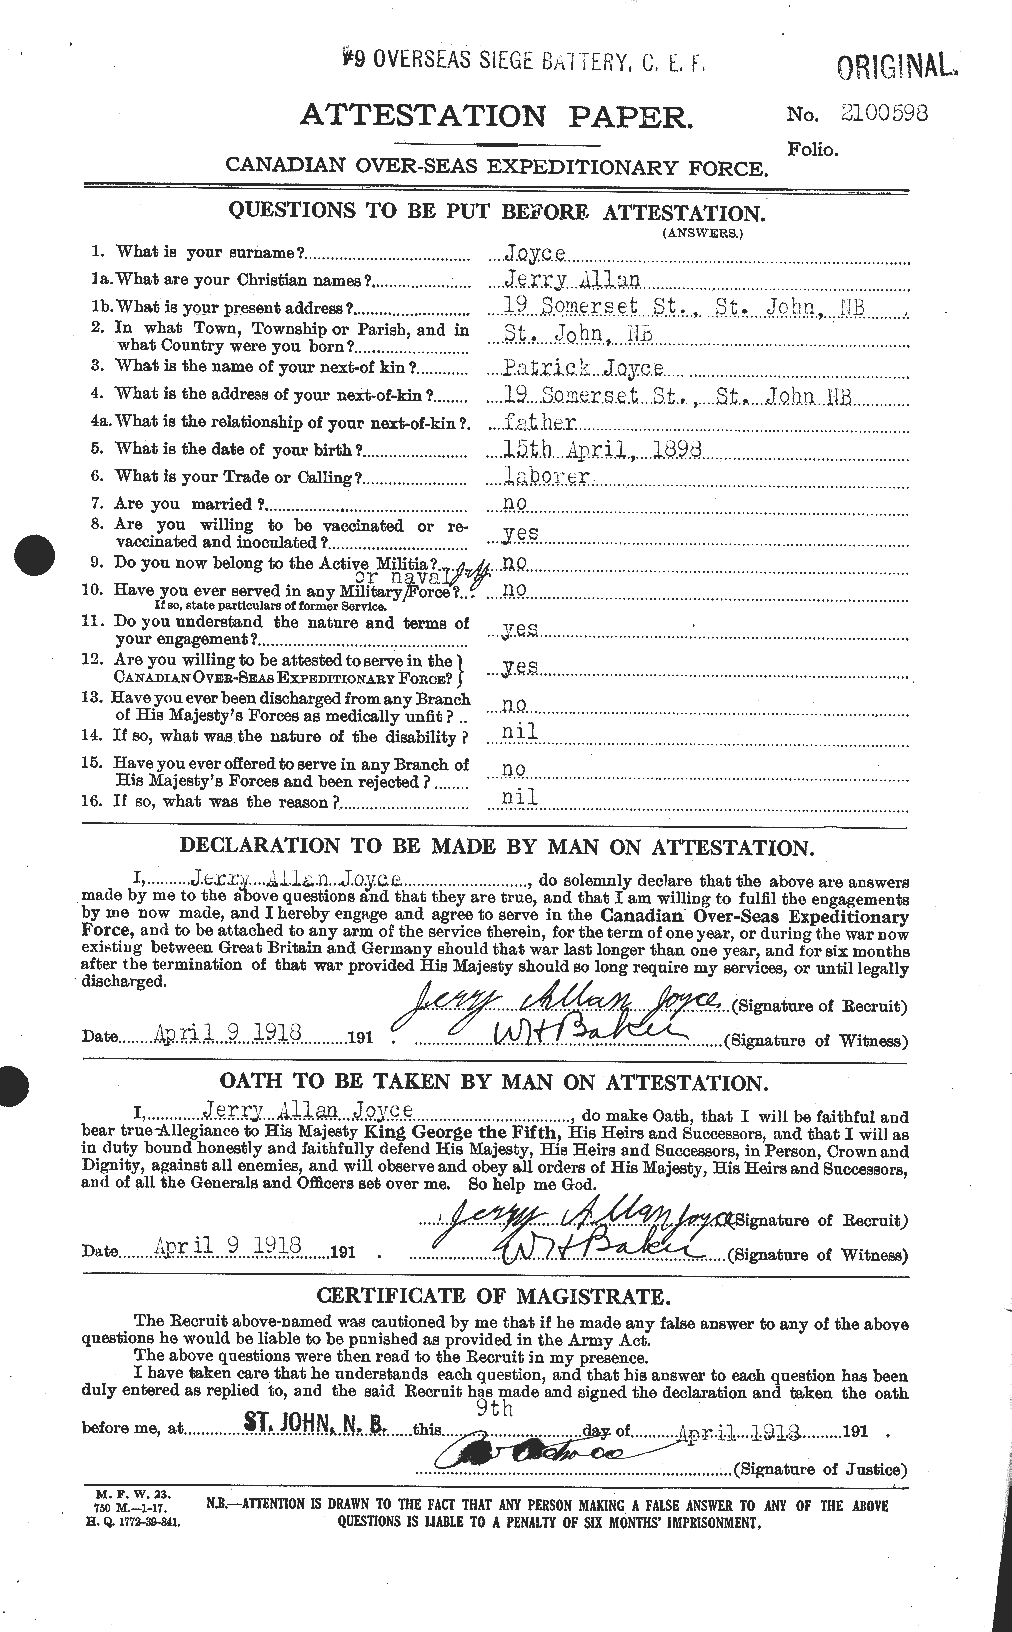 Dossiers du Personnel de la Première Guerre mondiale - CEC 428827a